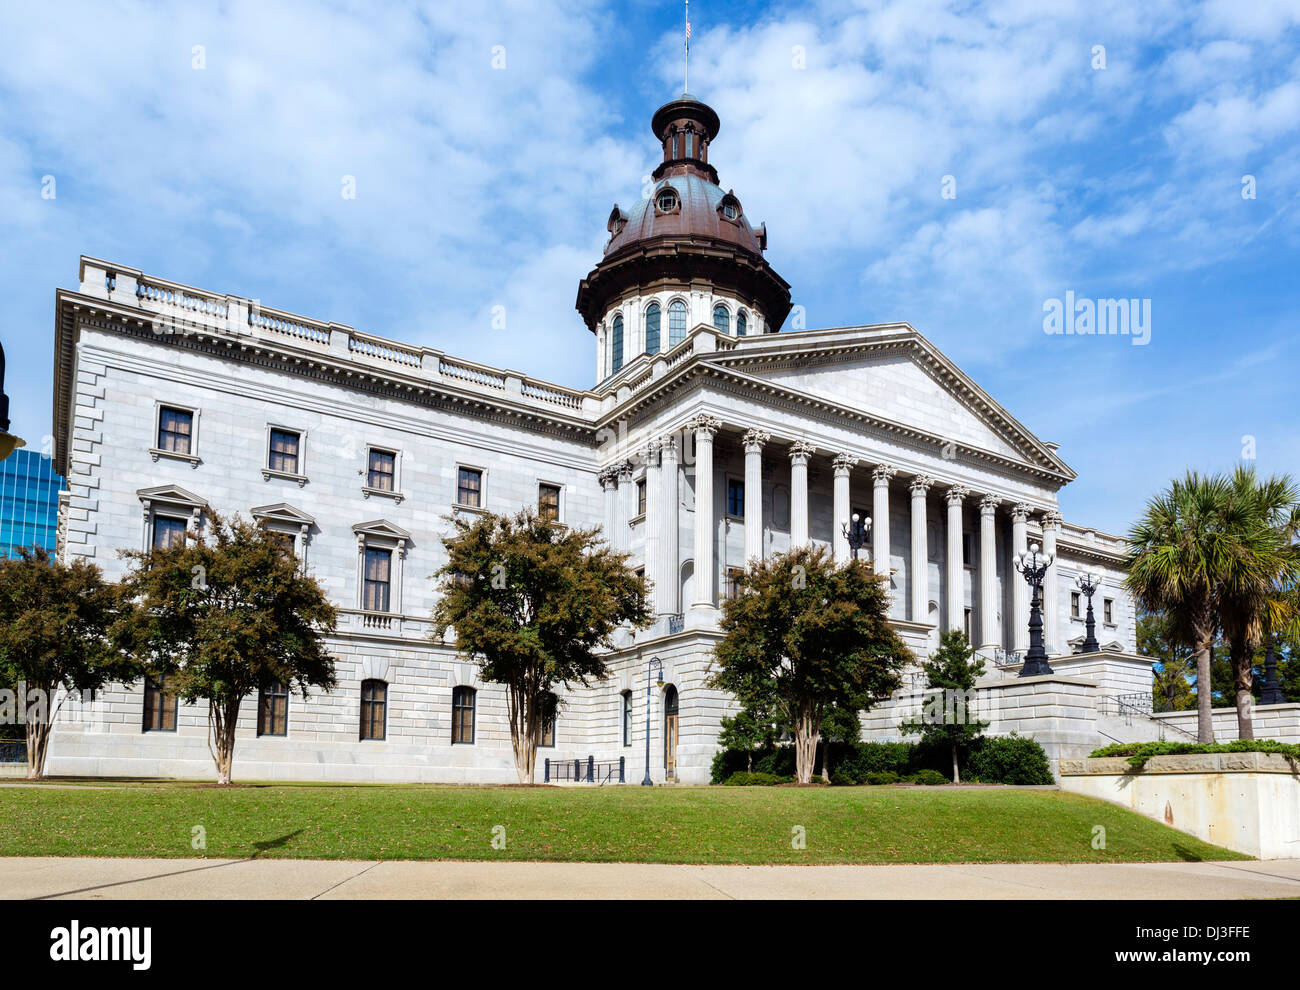 Edificio del Estado de Carolina del Sur, Columbia, Carolina del Sur, EE.UU. Foto de stock